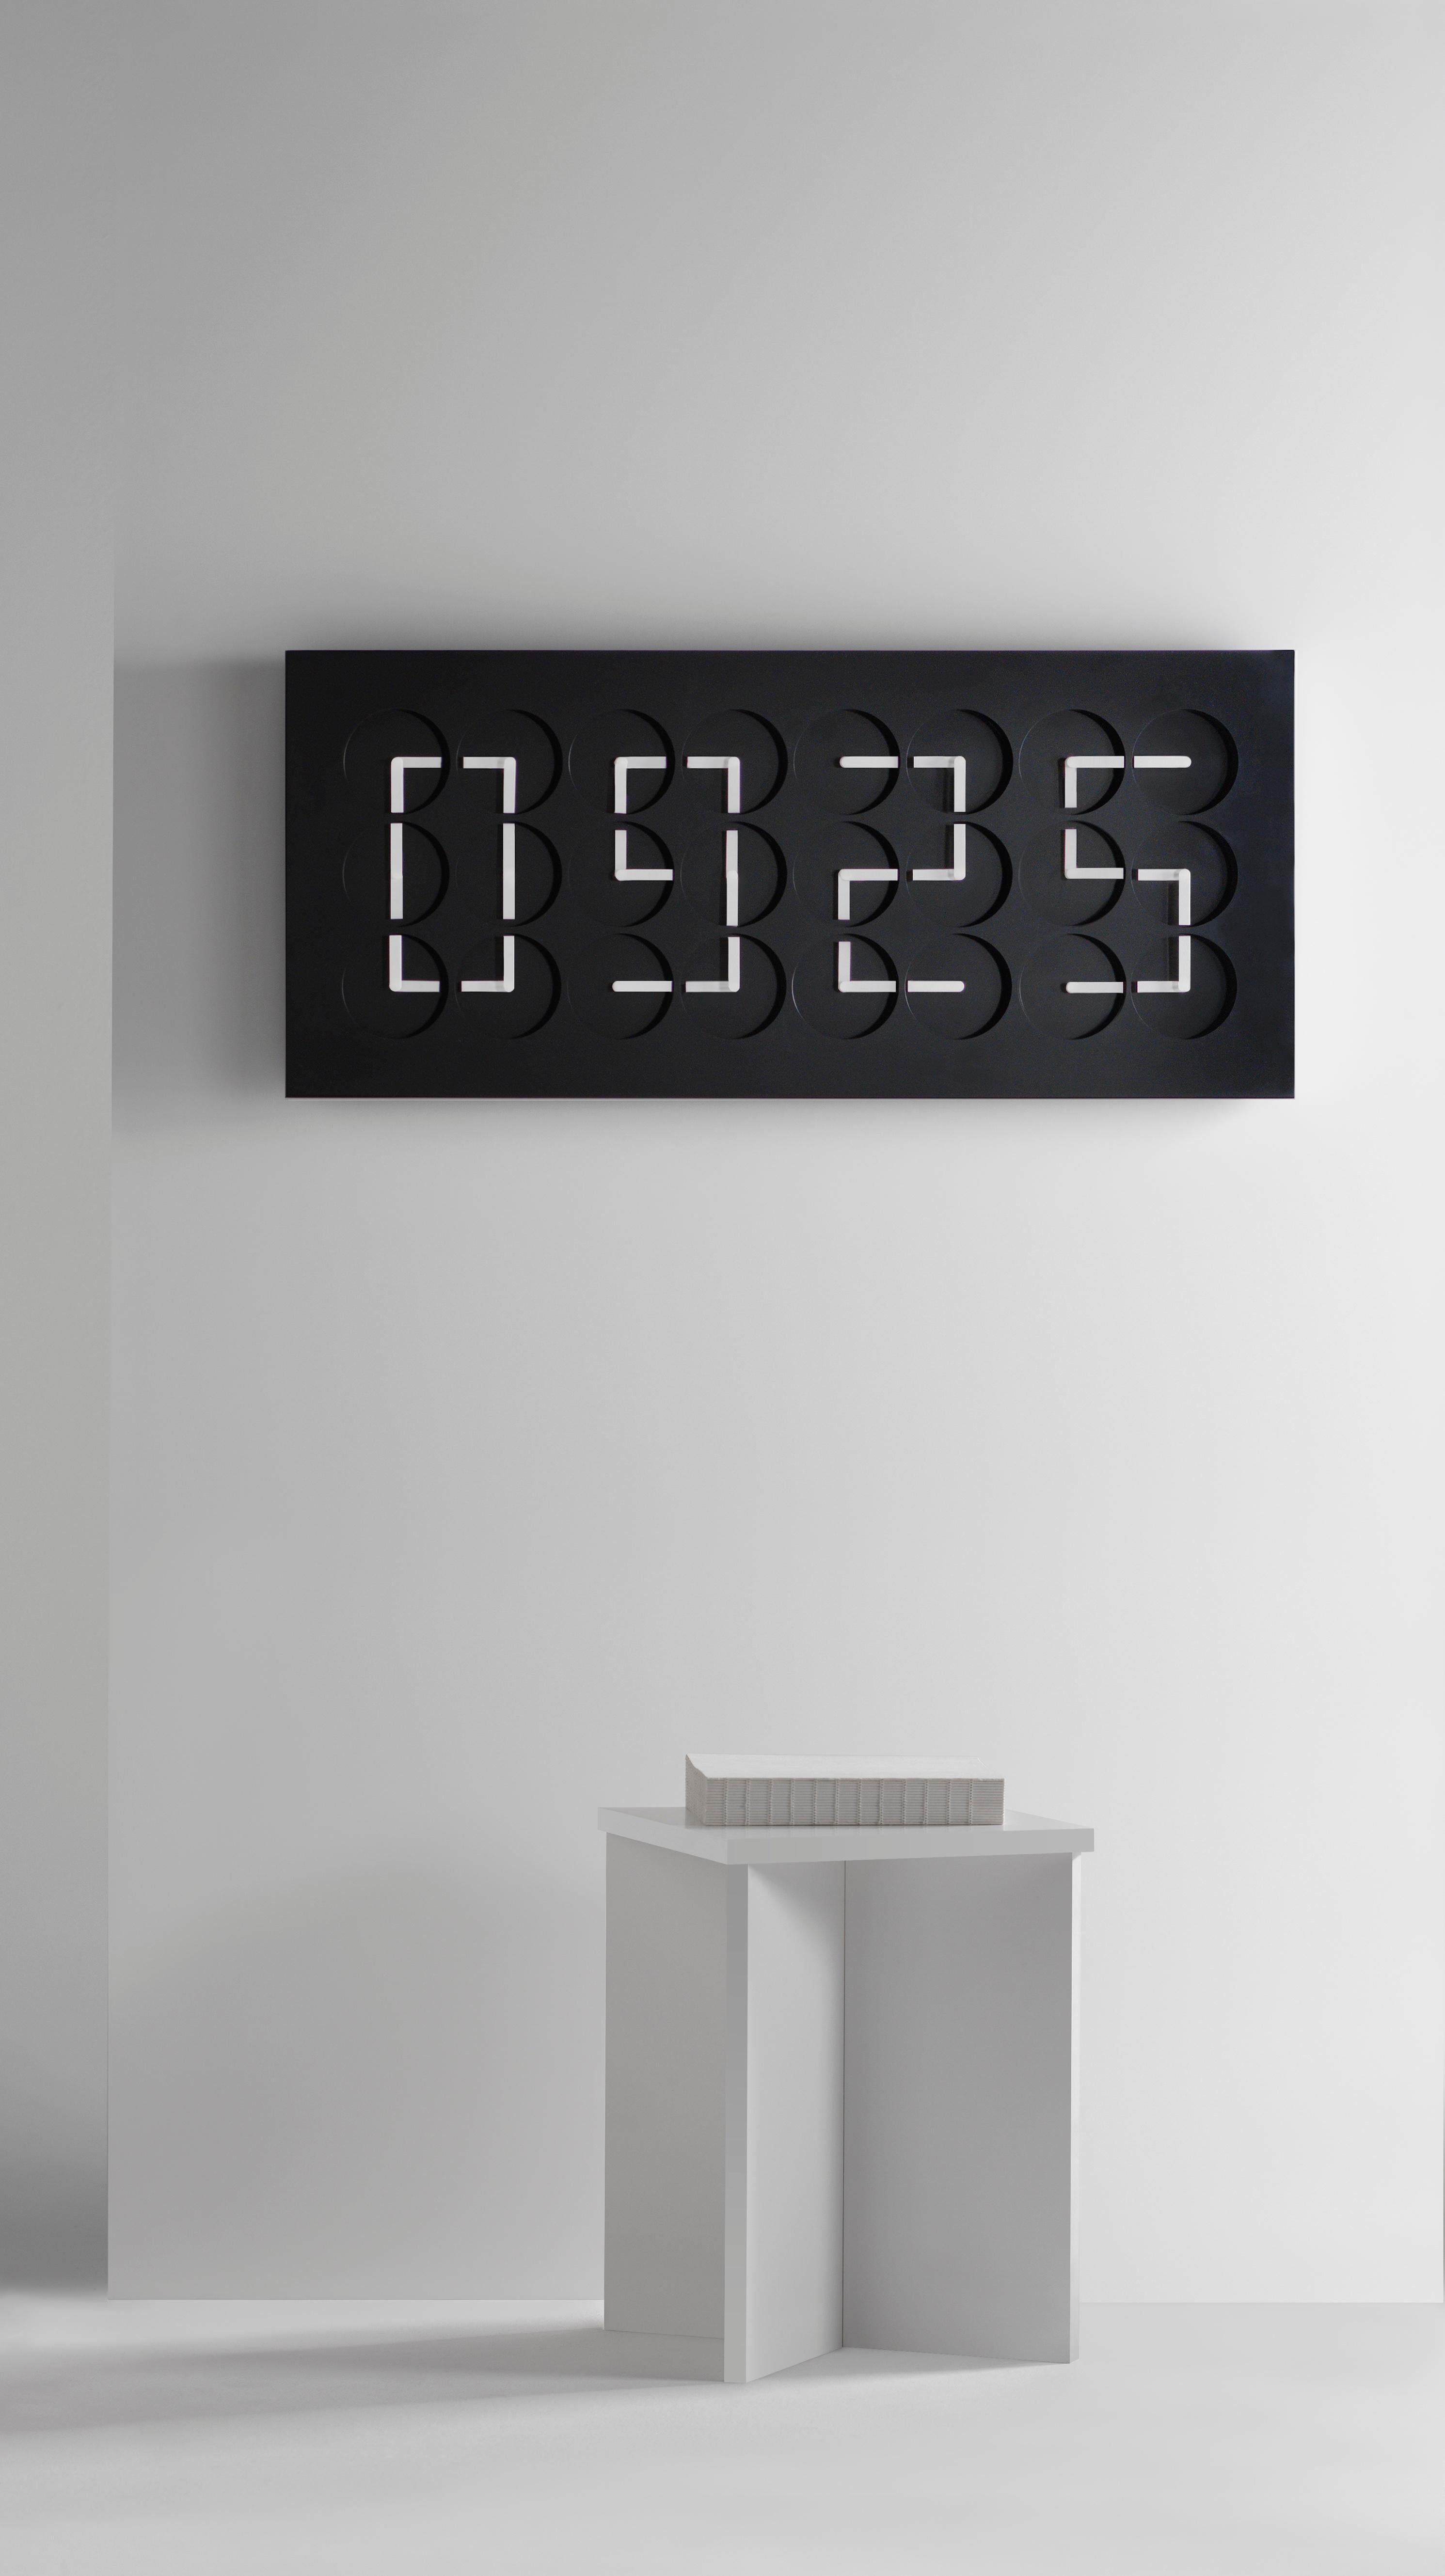 ClockClock 24 est à la fois une sculpture cinétique et une horloge murale fonctionnelle. Il s'agit d'une pièce maîtresse de la marque Humans depuis 1982, depuis son lancement en 2016. Les aiguilles de l'horloge passent d'une rotation mécanique